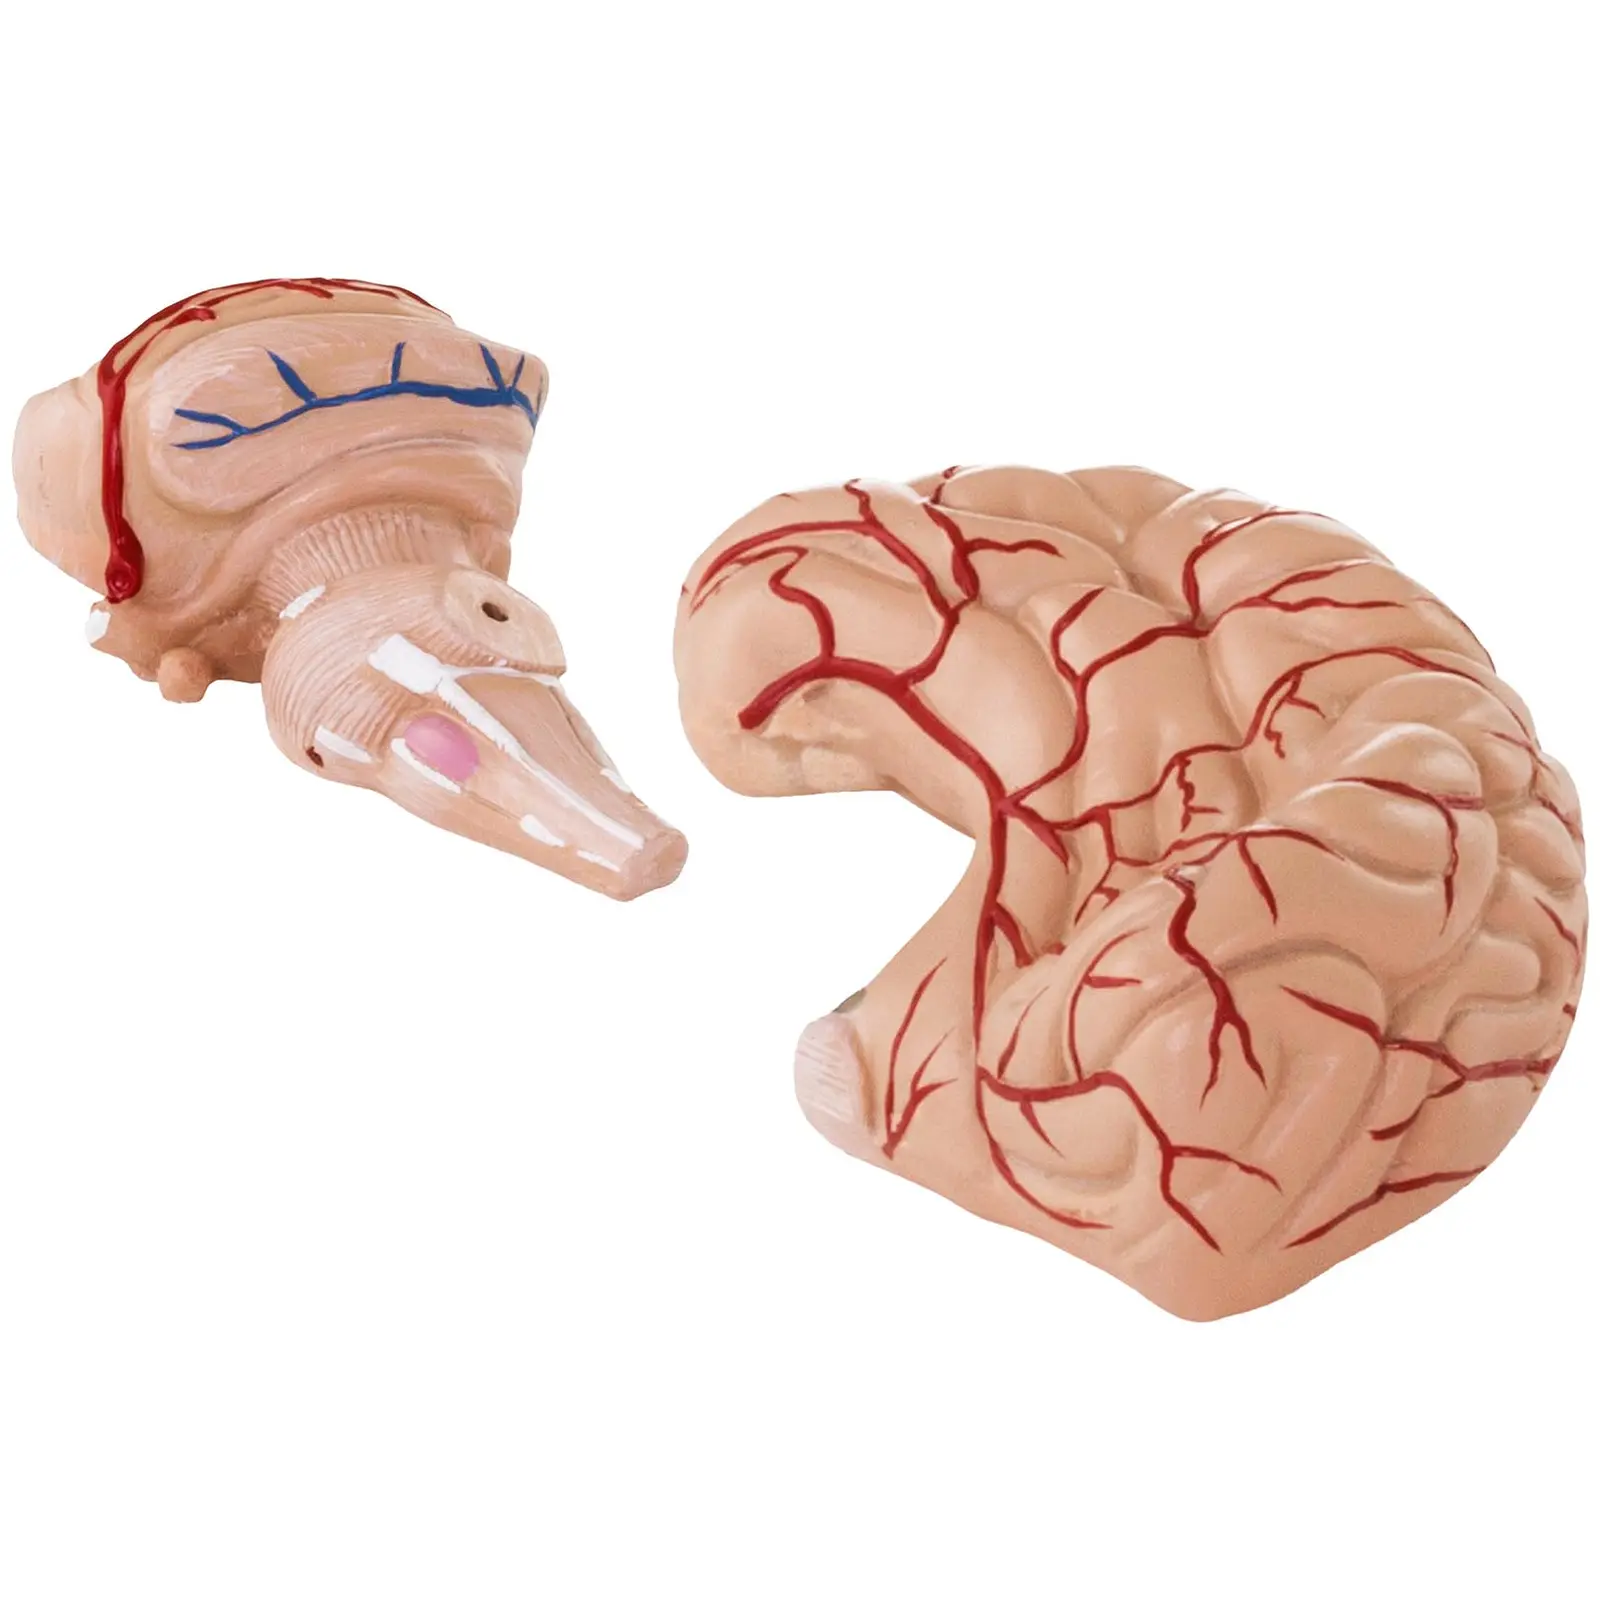 Gehirn-Modell - 9 Segmente - lebensgroß